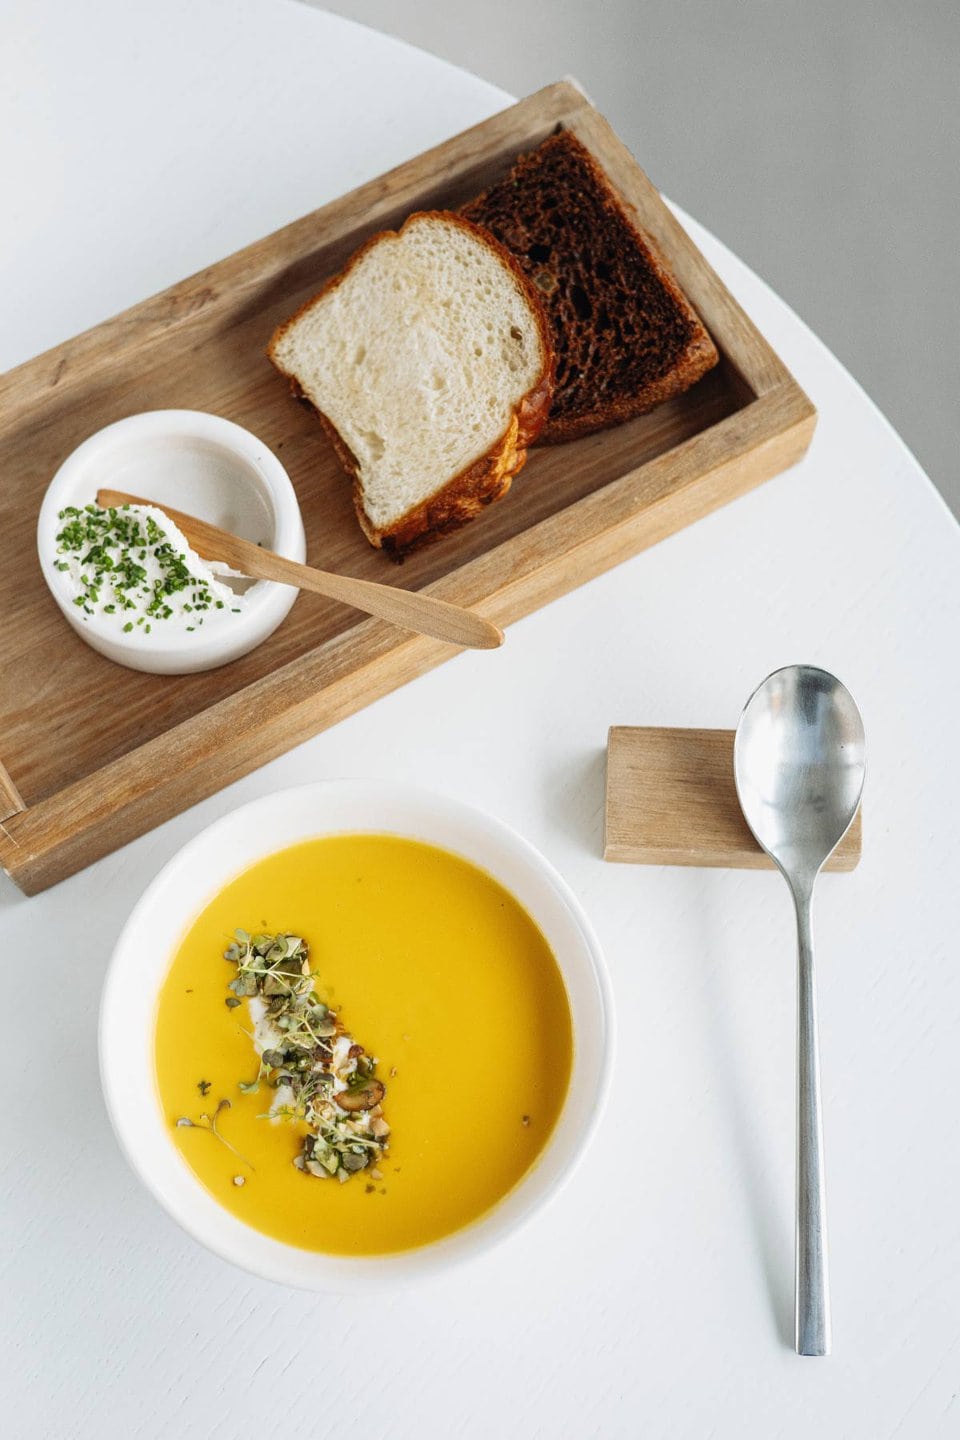 Auf einem weißen Tisch steht eine Schüssel gelbe Suppe, garniert mit Gemüse, neben einem silbernen Löffel. Daneben liegt ein Holztablett mit gerösteten und normalen Brotscheiben, einer kleinen Schüssel weißer Sahne und einem Holzlöffel.